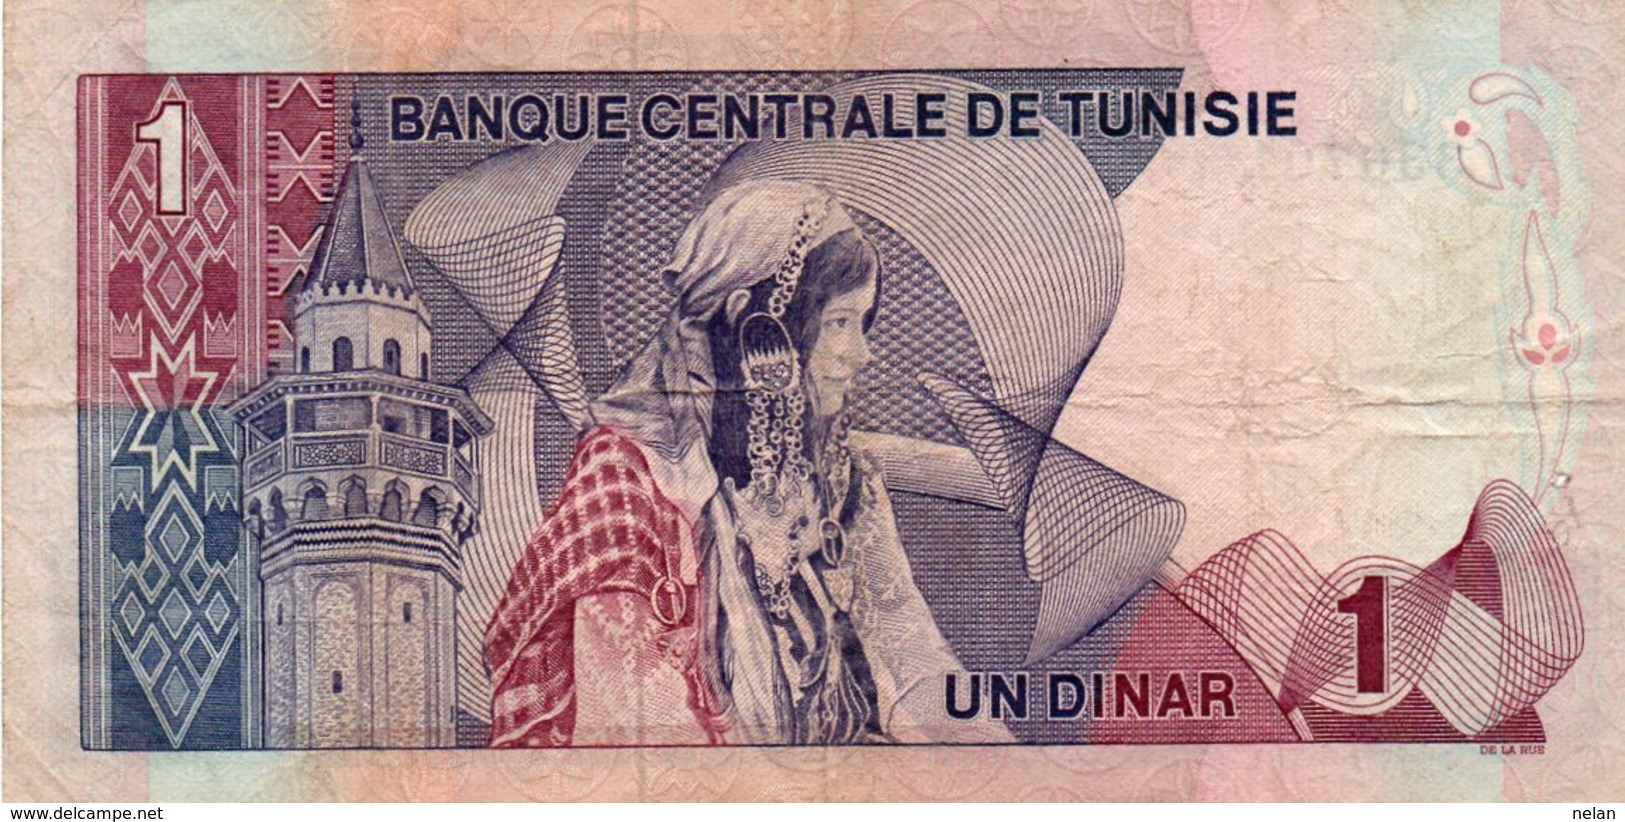 TUNISIA 1 DINAR 1972 P-67a CIRC.  SERIE 330701 - Westafrikanischer Staaten